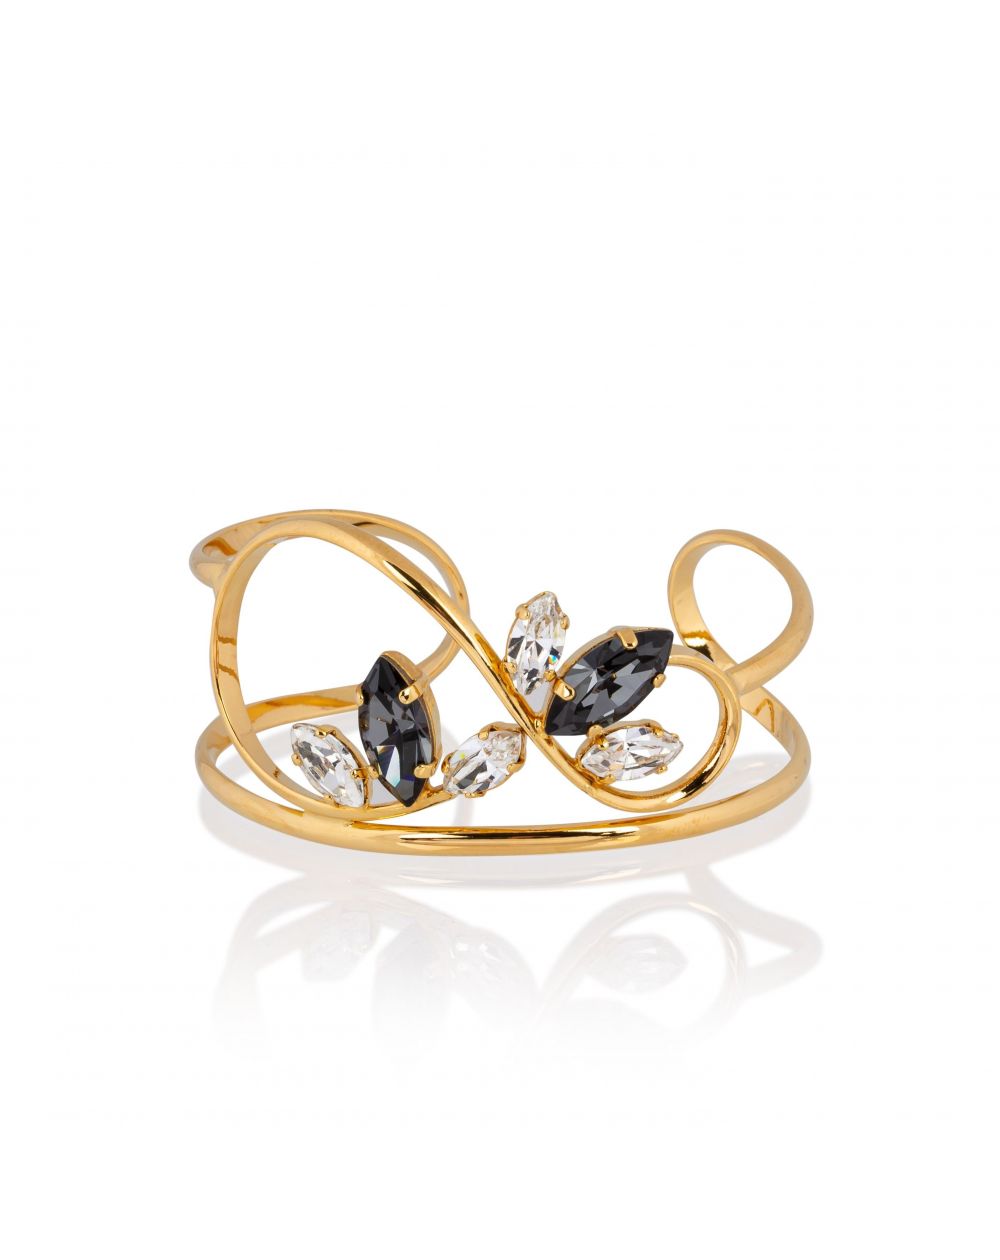 Andrea Marazzini bijoux - Bracelet cristal Swarovski Navette F62 New Black Printemps